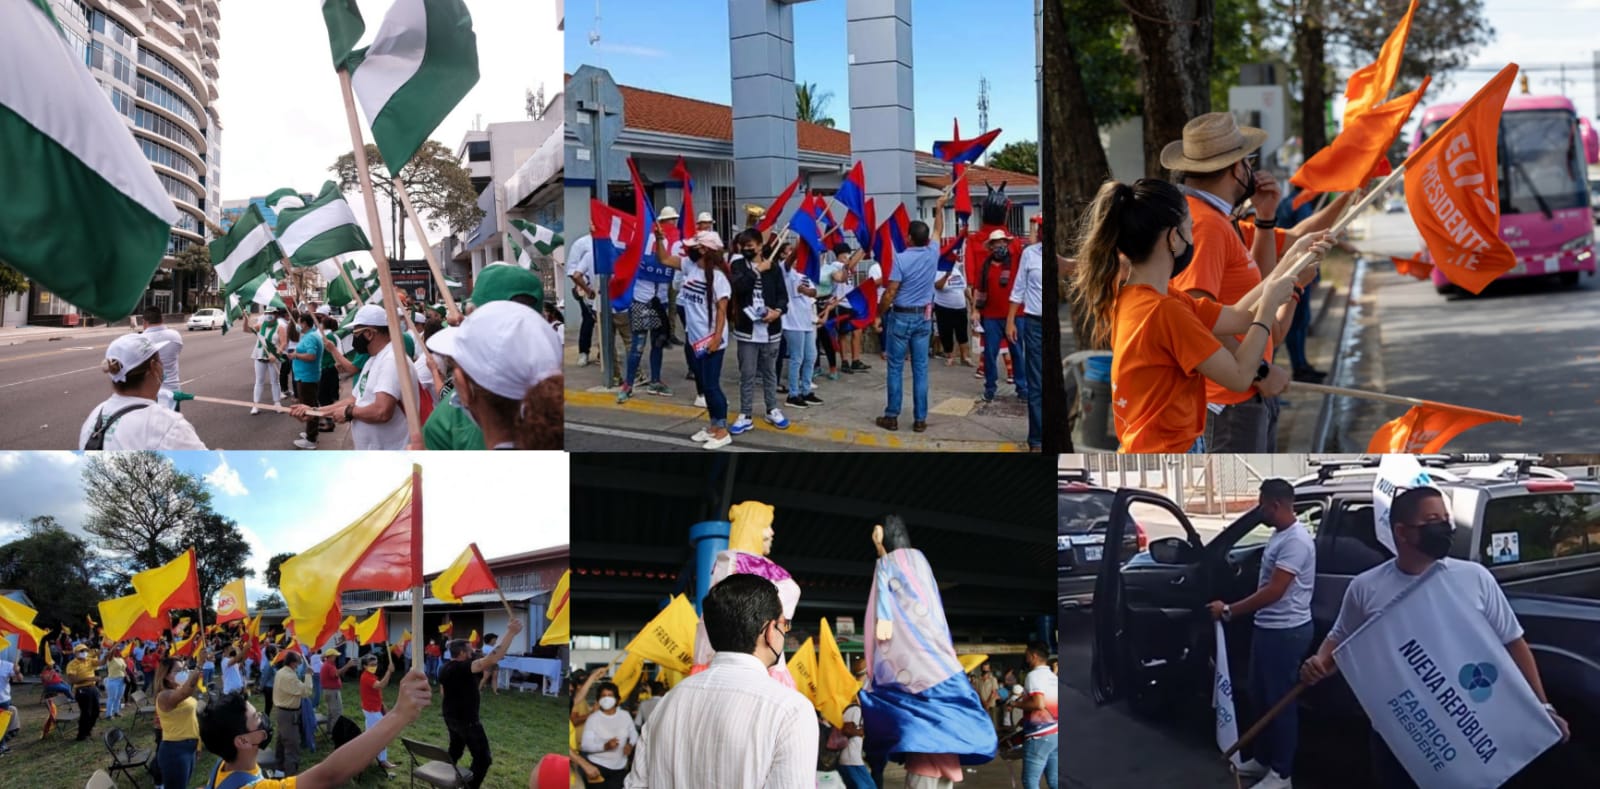 Partidos políticos realizaron piquetes y caravanas en último día para celebrar reuniones en zonas públicas previo a elecciones